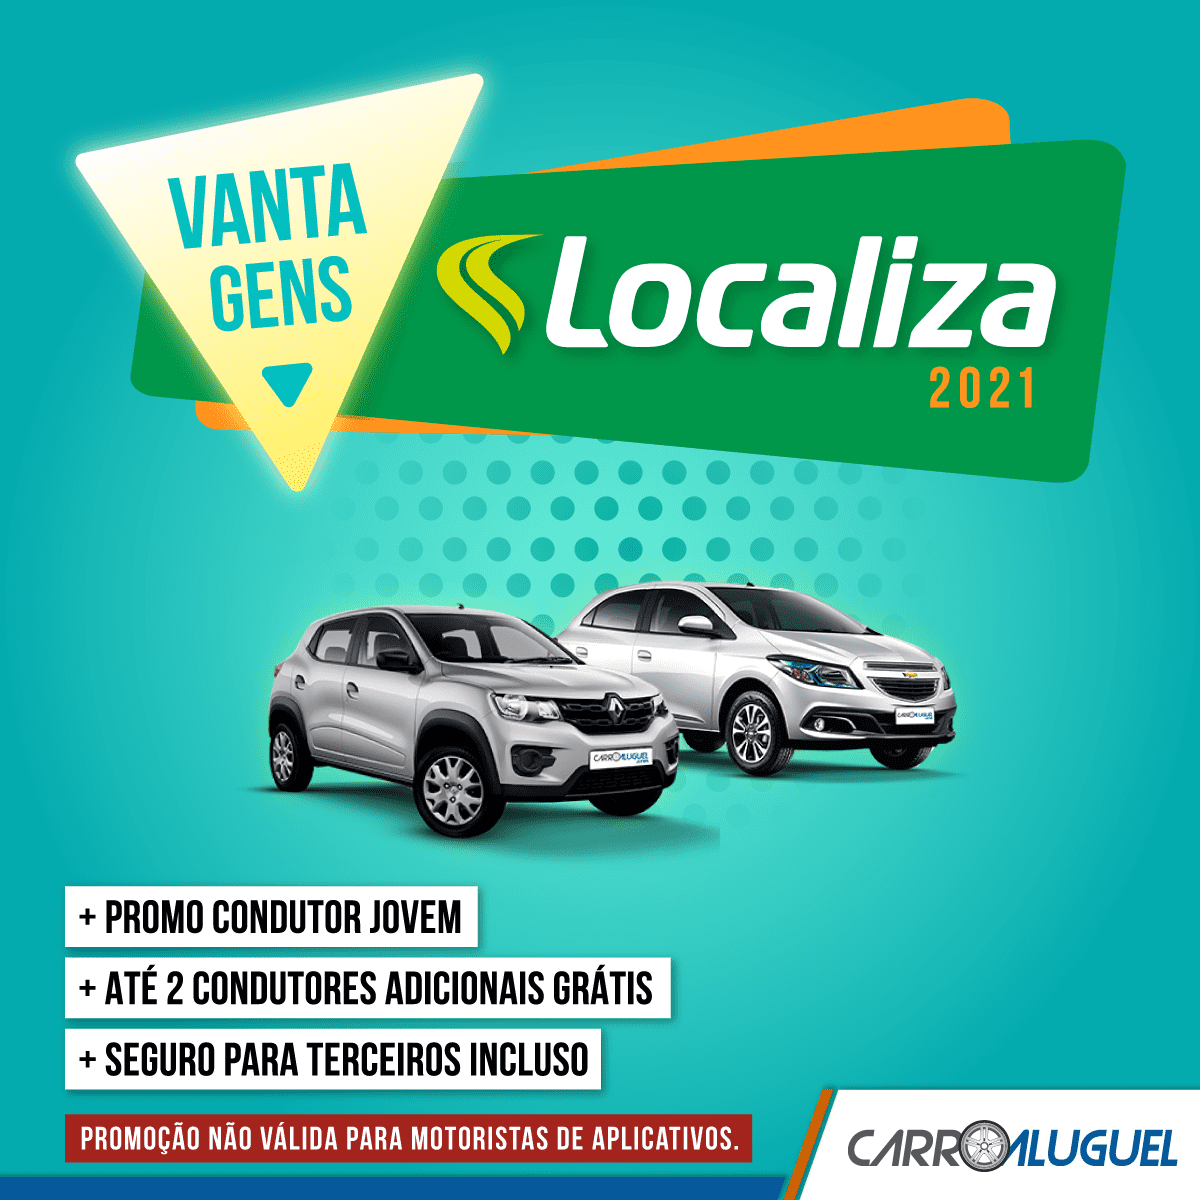 Imagem promocional Localiza: + promo condutor jovem + até 2 condutores adicionais grátis + seguro para terceiros inclusos. Promoção não válida para motoristas de aplicativos.